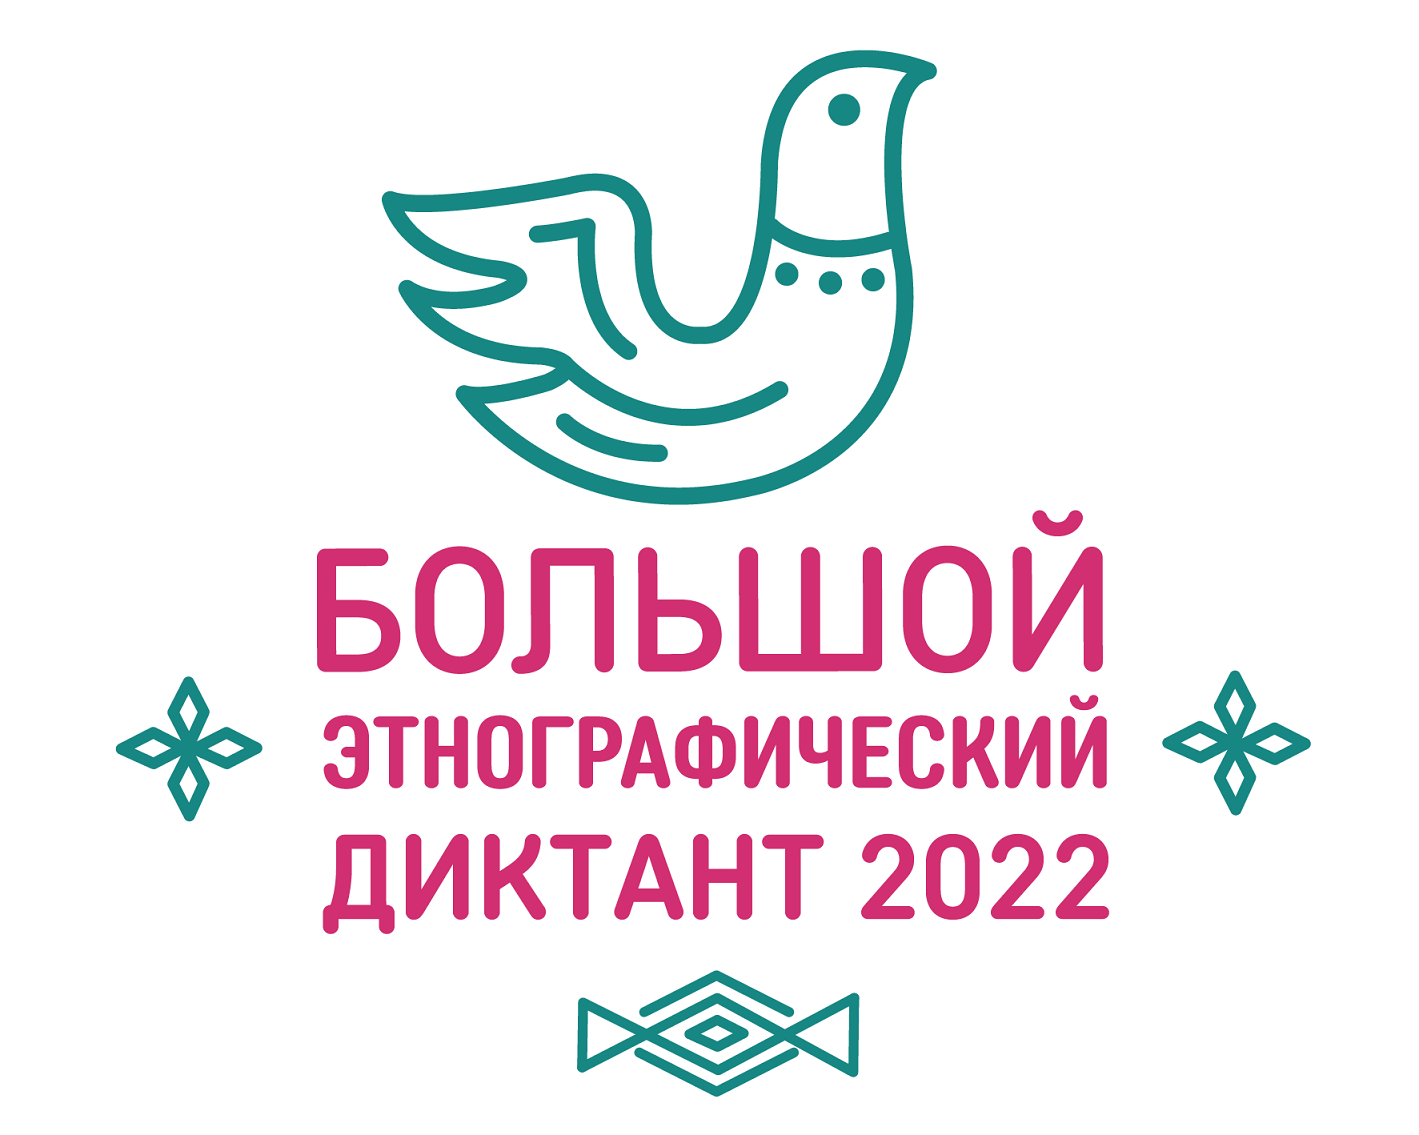 БЭД_logo_2022_vertik.png